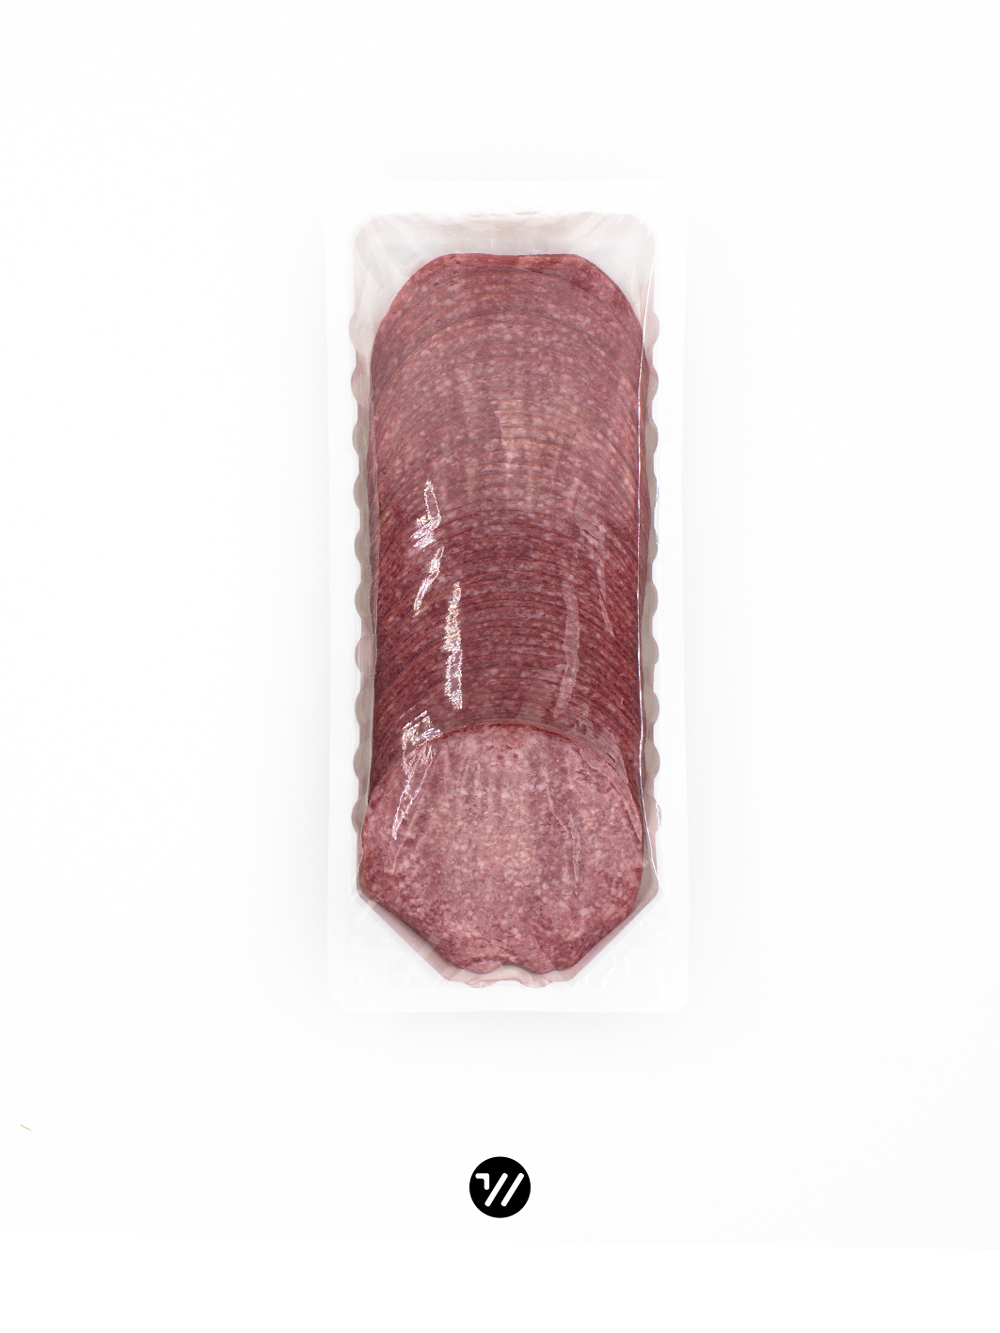 Salami geschnitten 500g von Bleyer & Wichert 